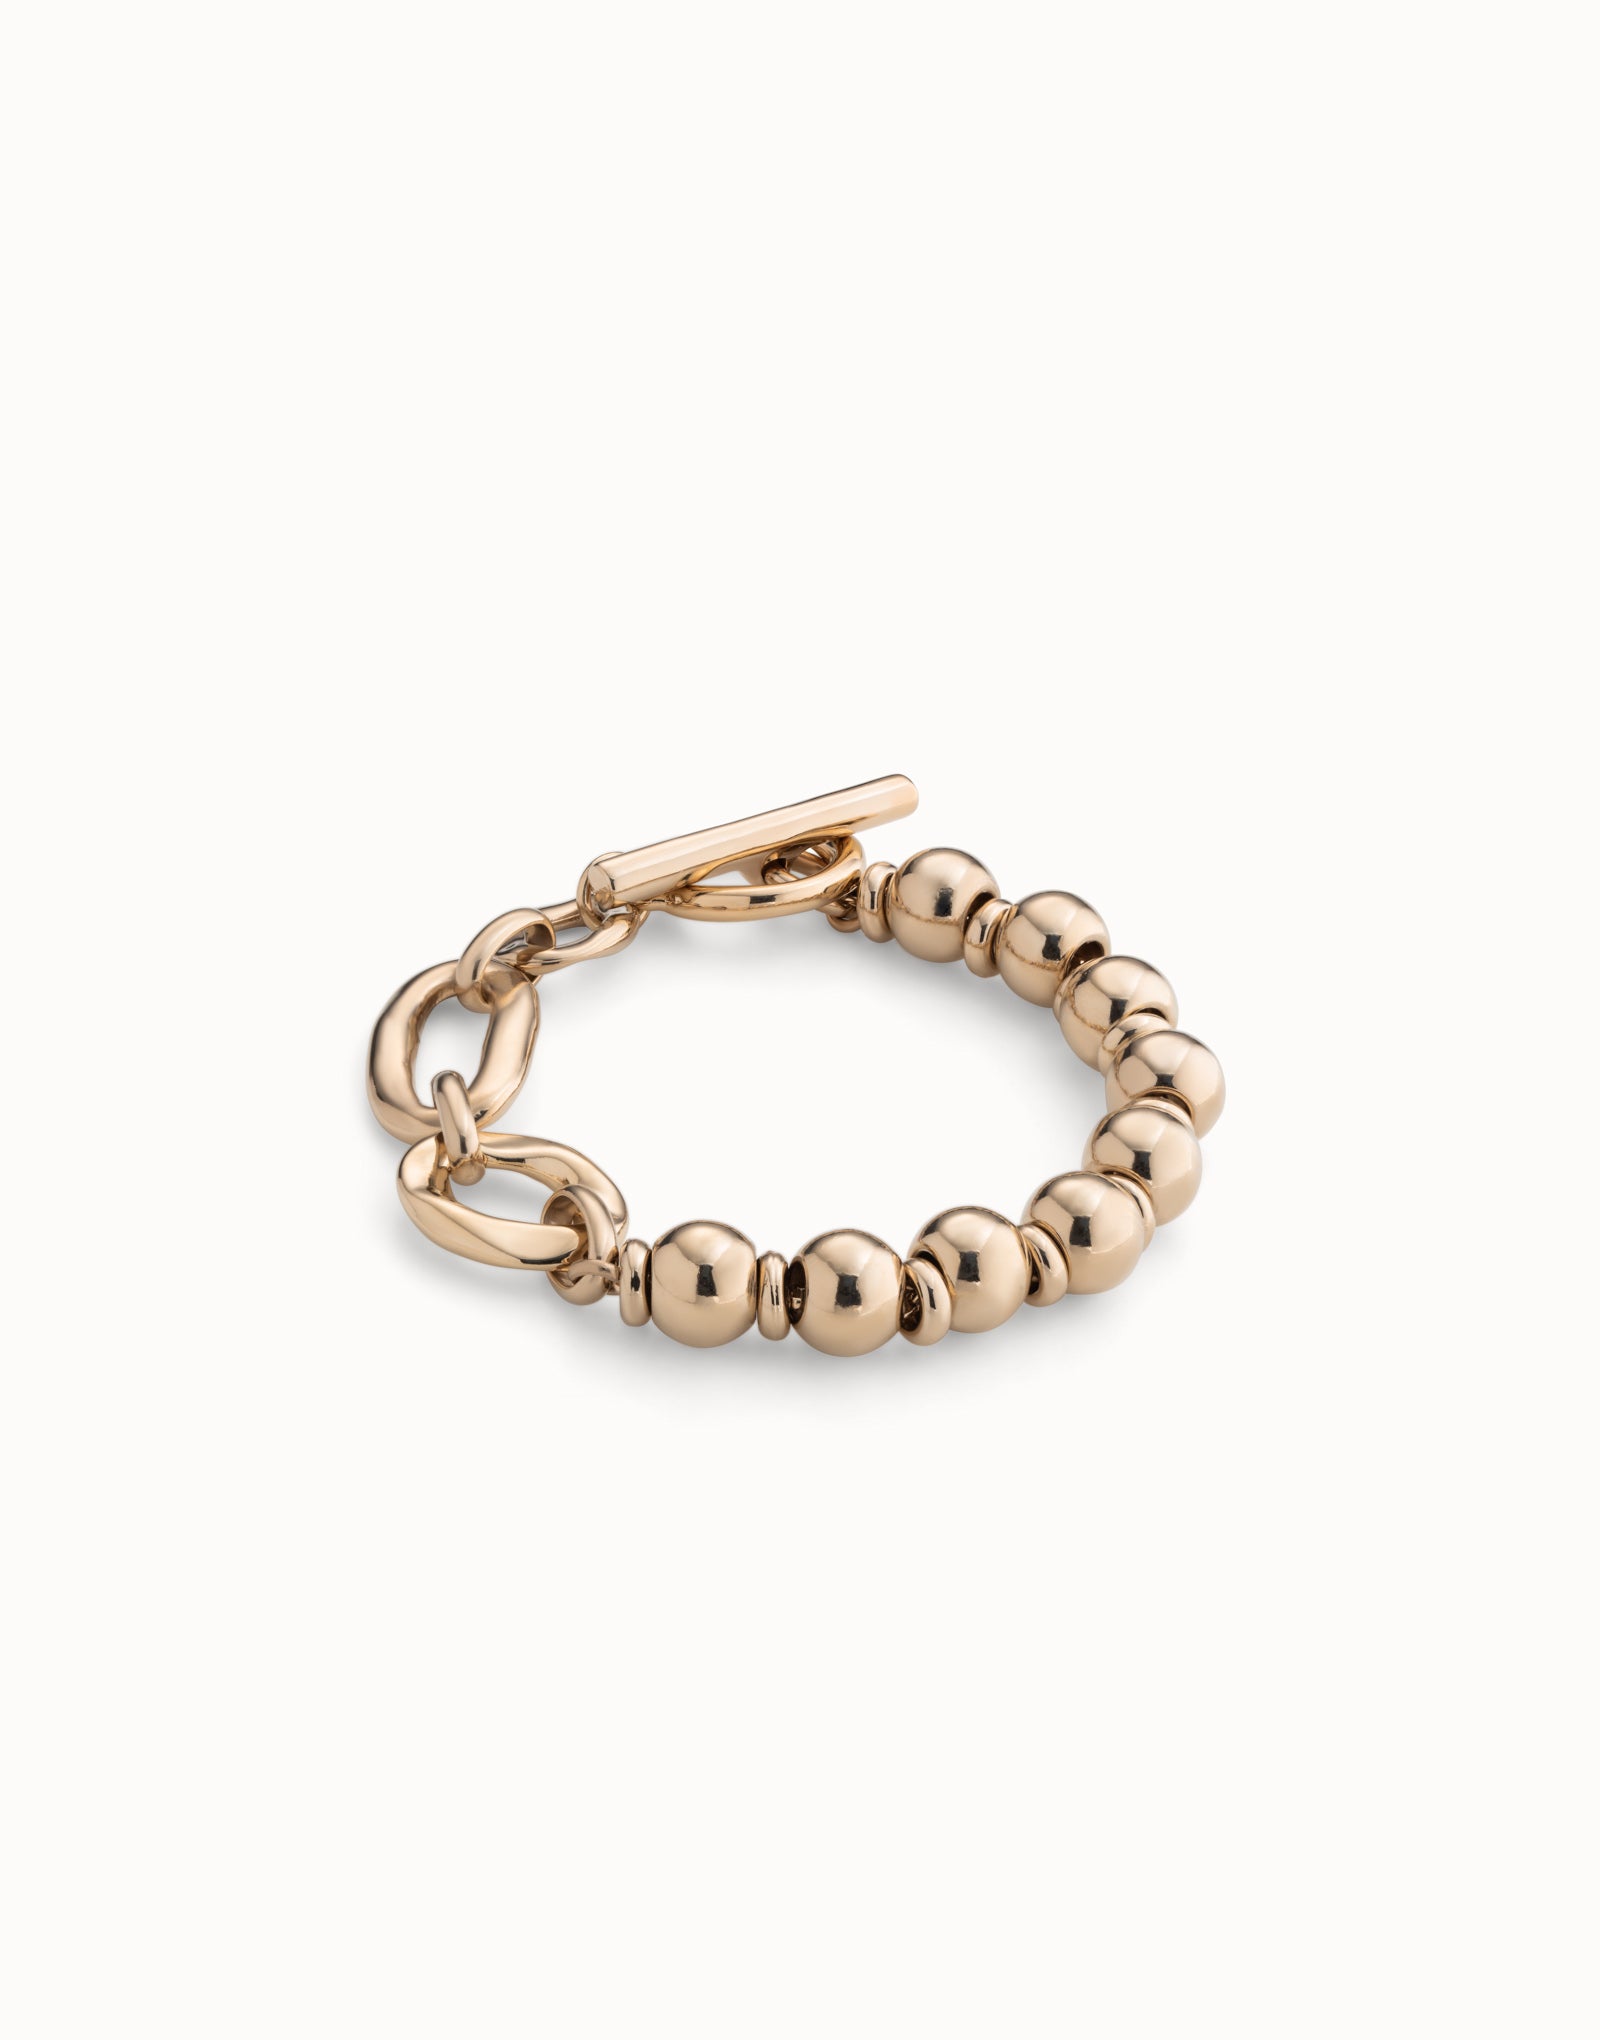 UNO de 50 Cheerful Gold Bracelet Size L